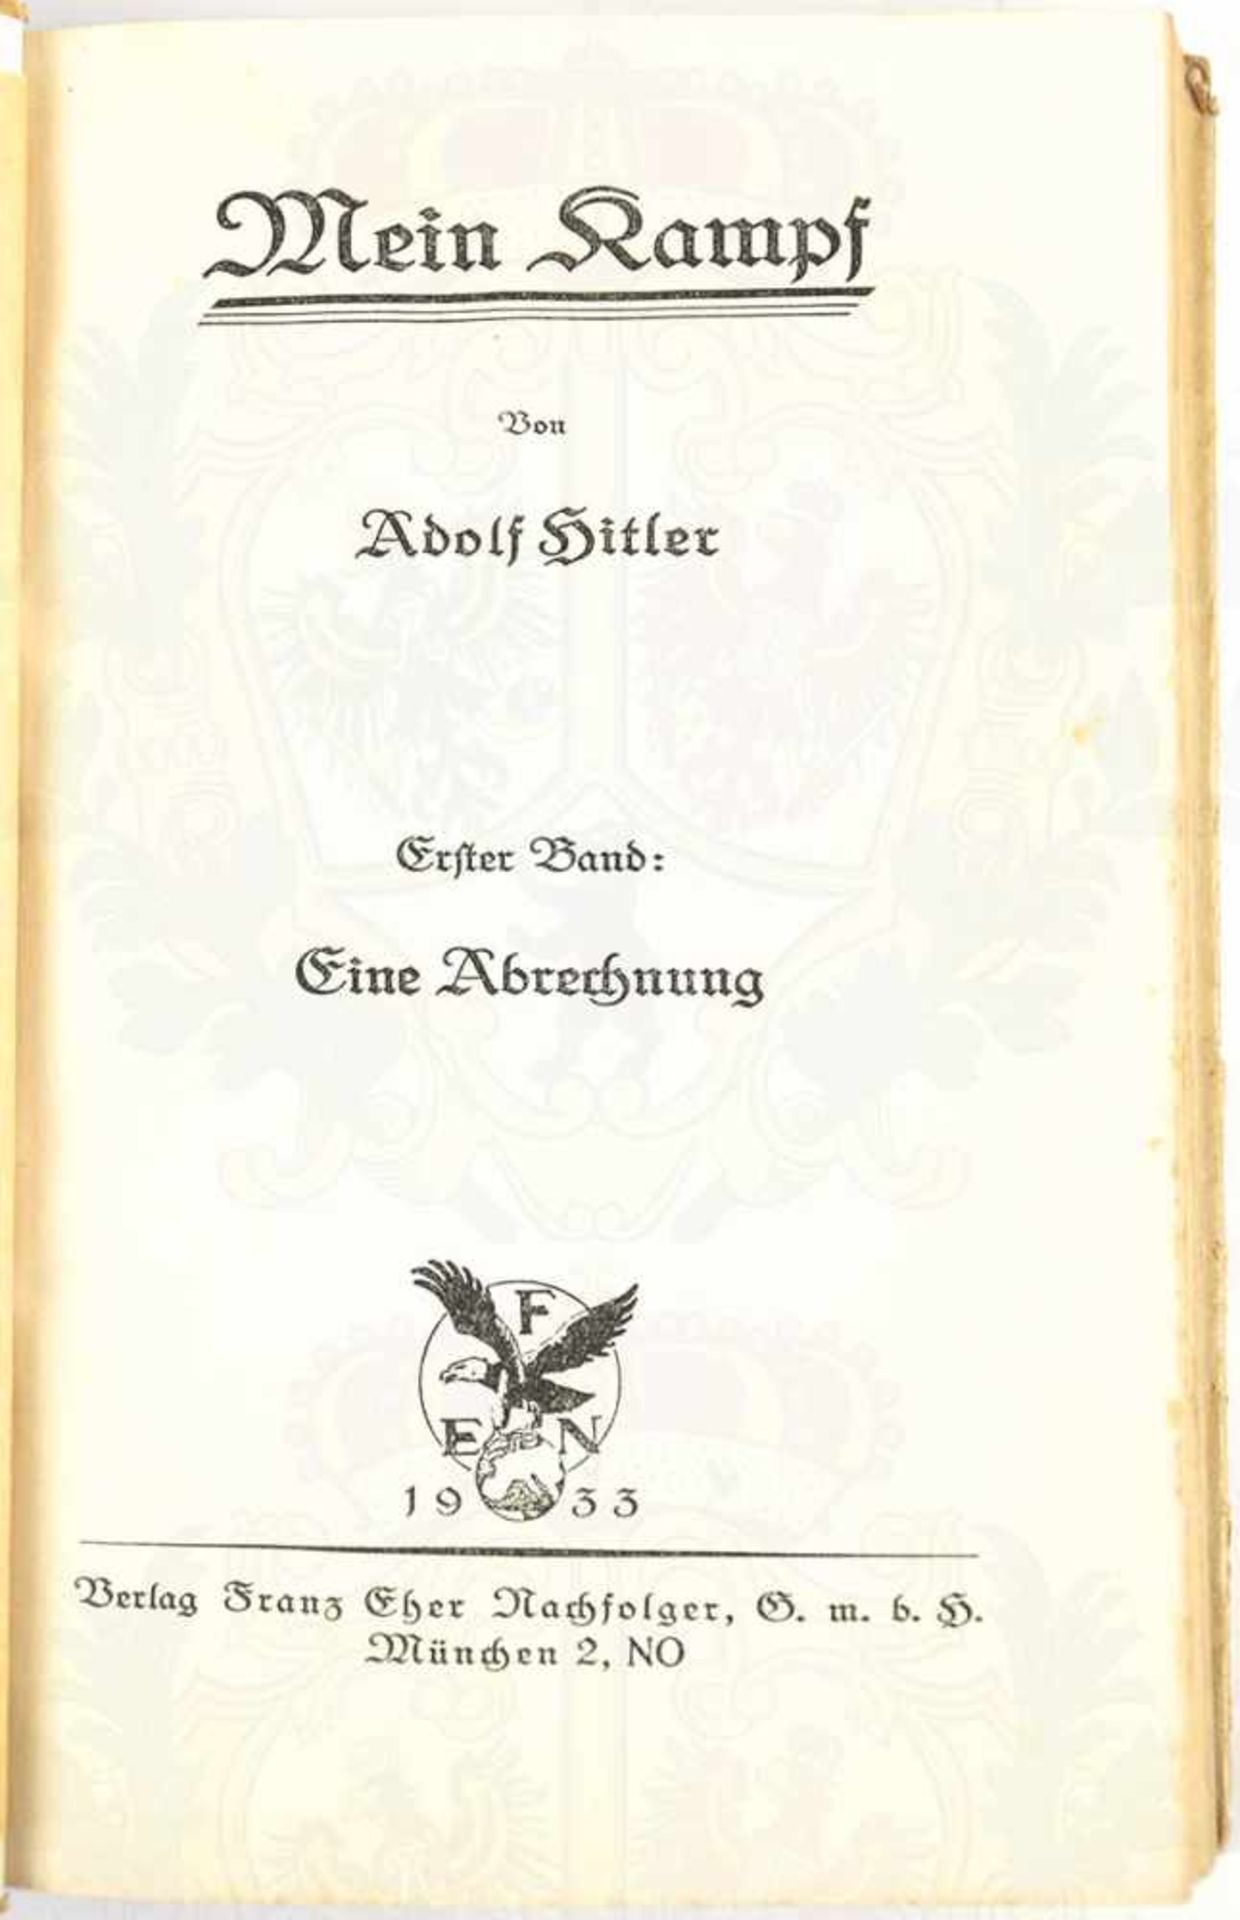 MEIN KAMPF, Adolf Hitler, Ausgabe in 2 Bänden, 23. Auflage, Eher-Verlag, München 1933, zus. 781 - Bild 3 aus 3